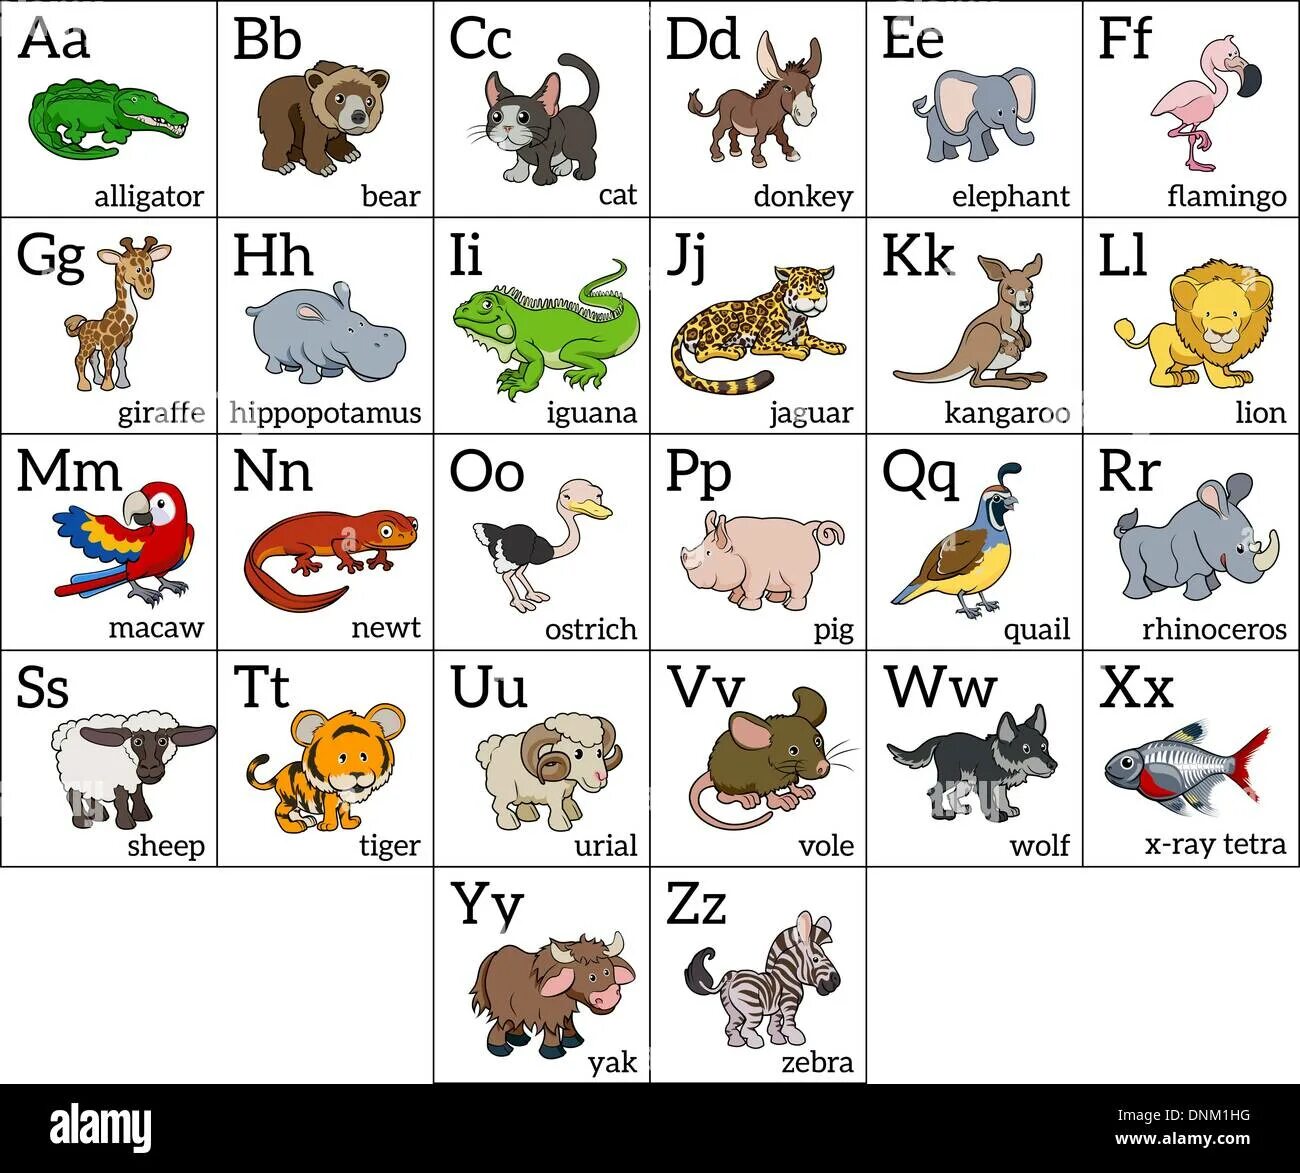 Назови животное на б. Алфавит английский животные. Животные на английском по алфавиту. Азбука животных в картинках. Названия животных по алфавиту.